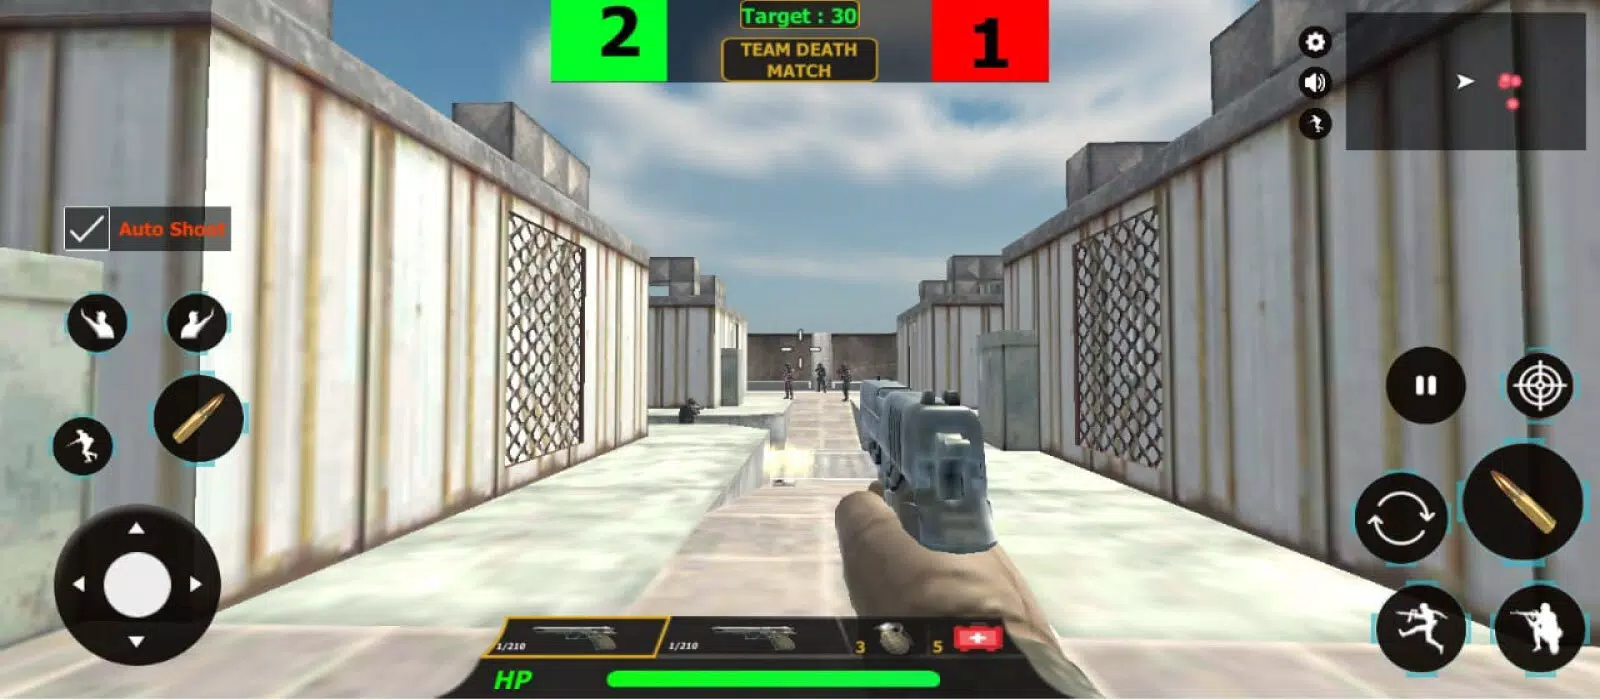 ดาวน์โหลด Critical Strike Online Counter FPS Game APK สำหรับ Android